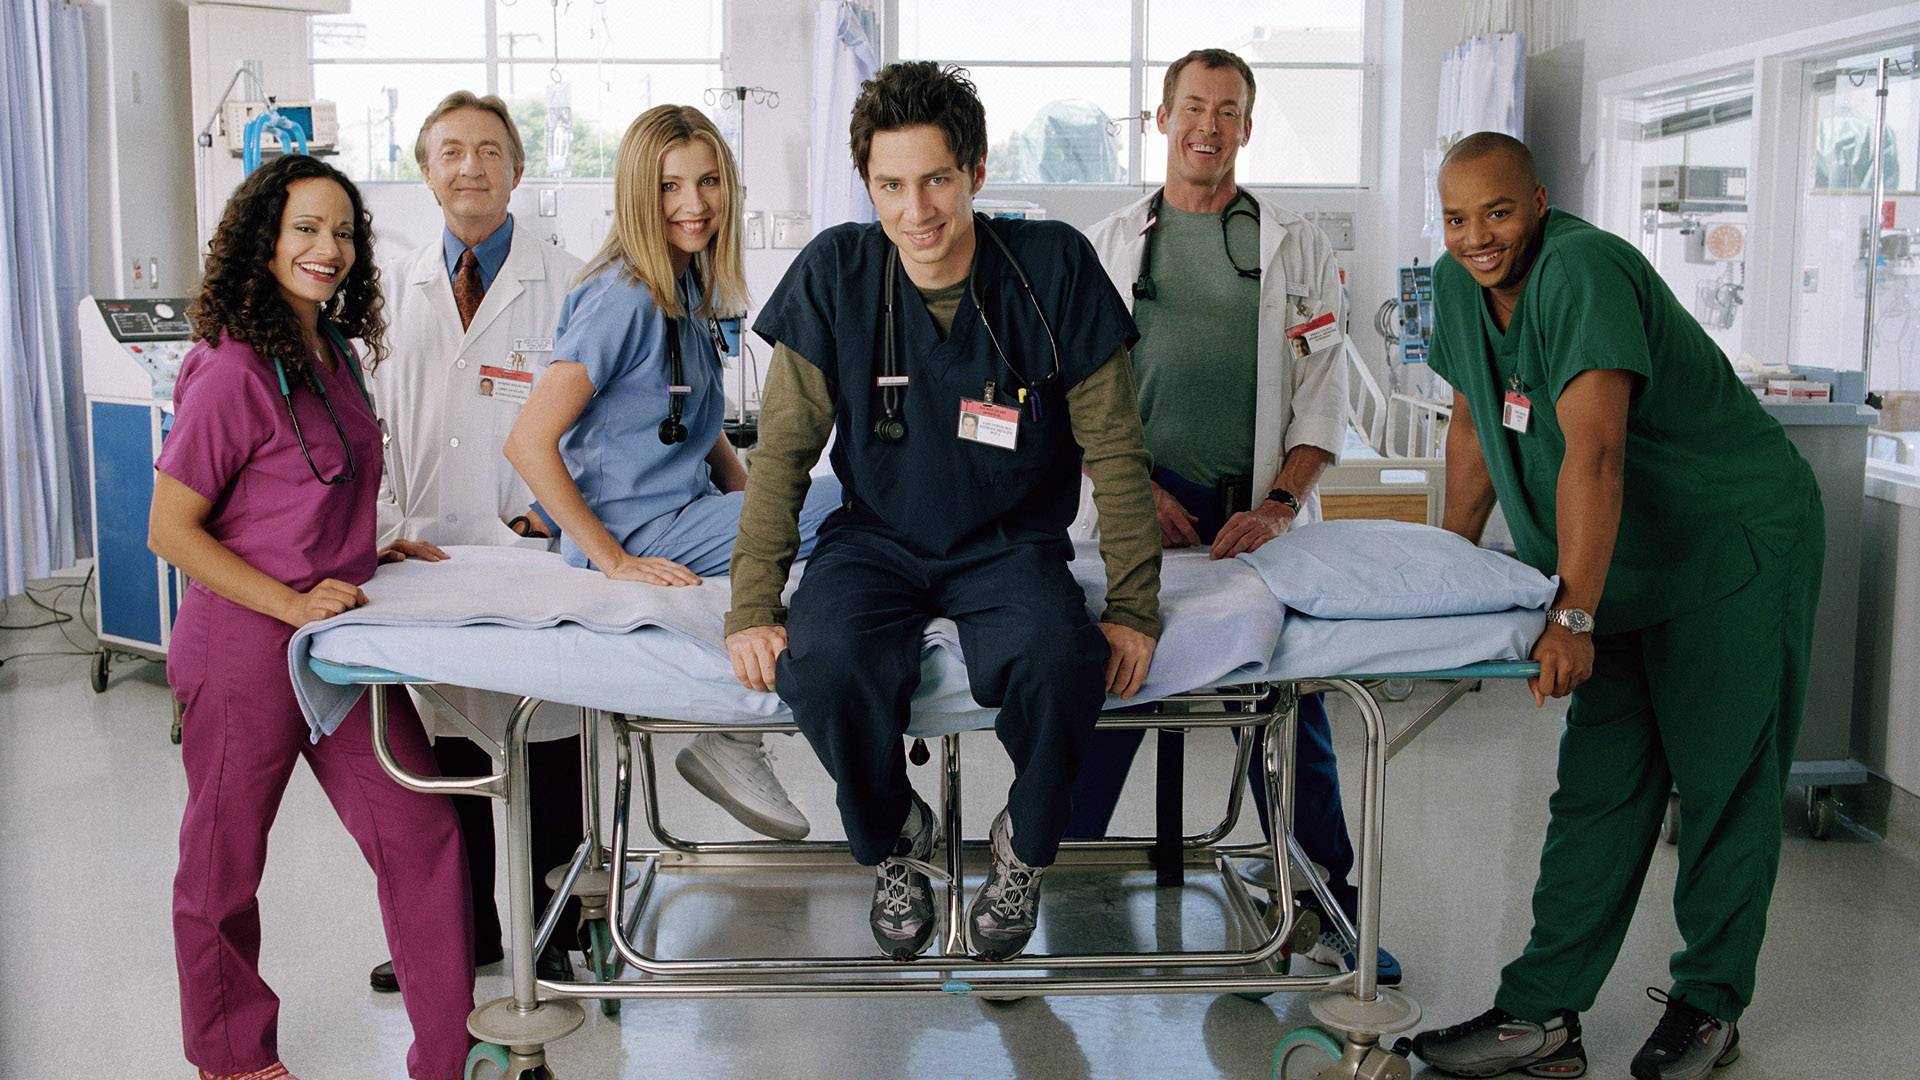 Клиника (сериал) (Scrubs - TV series) отзывы о сериале.